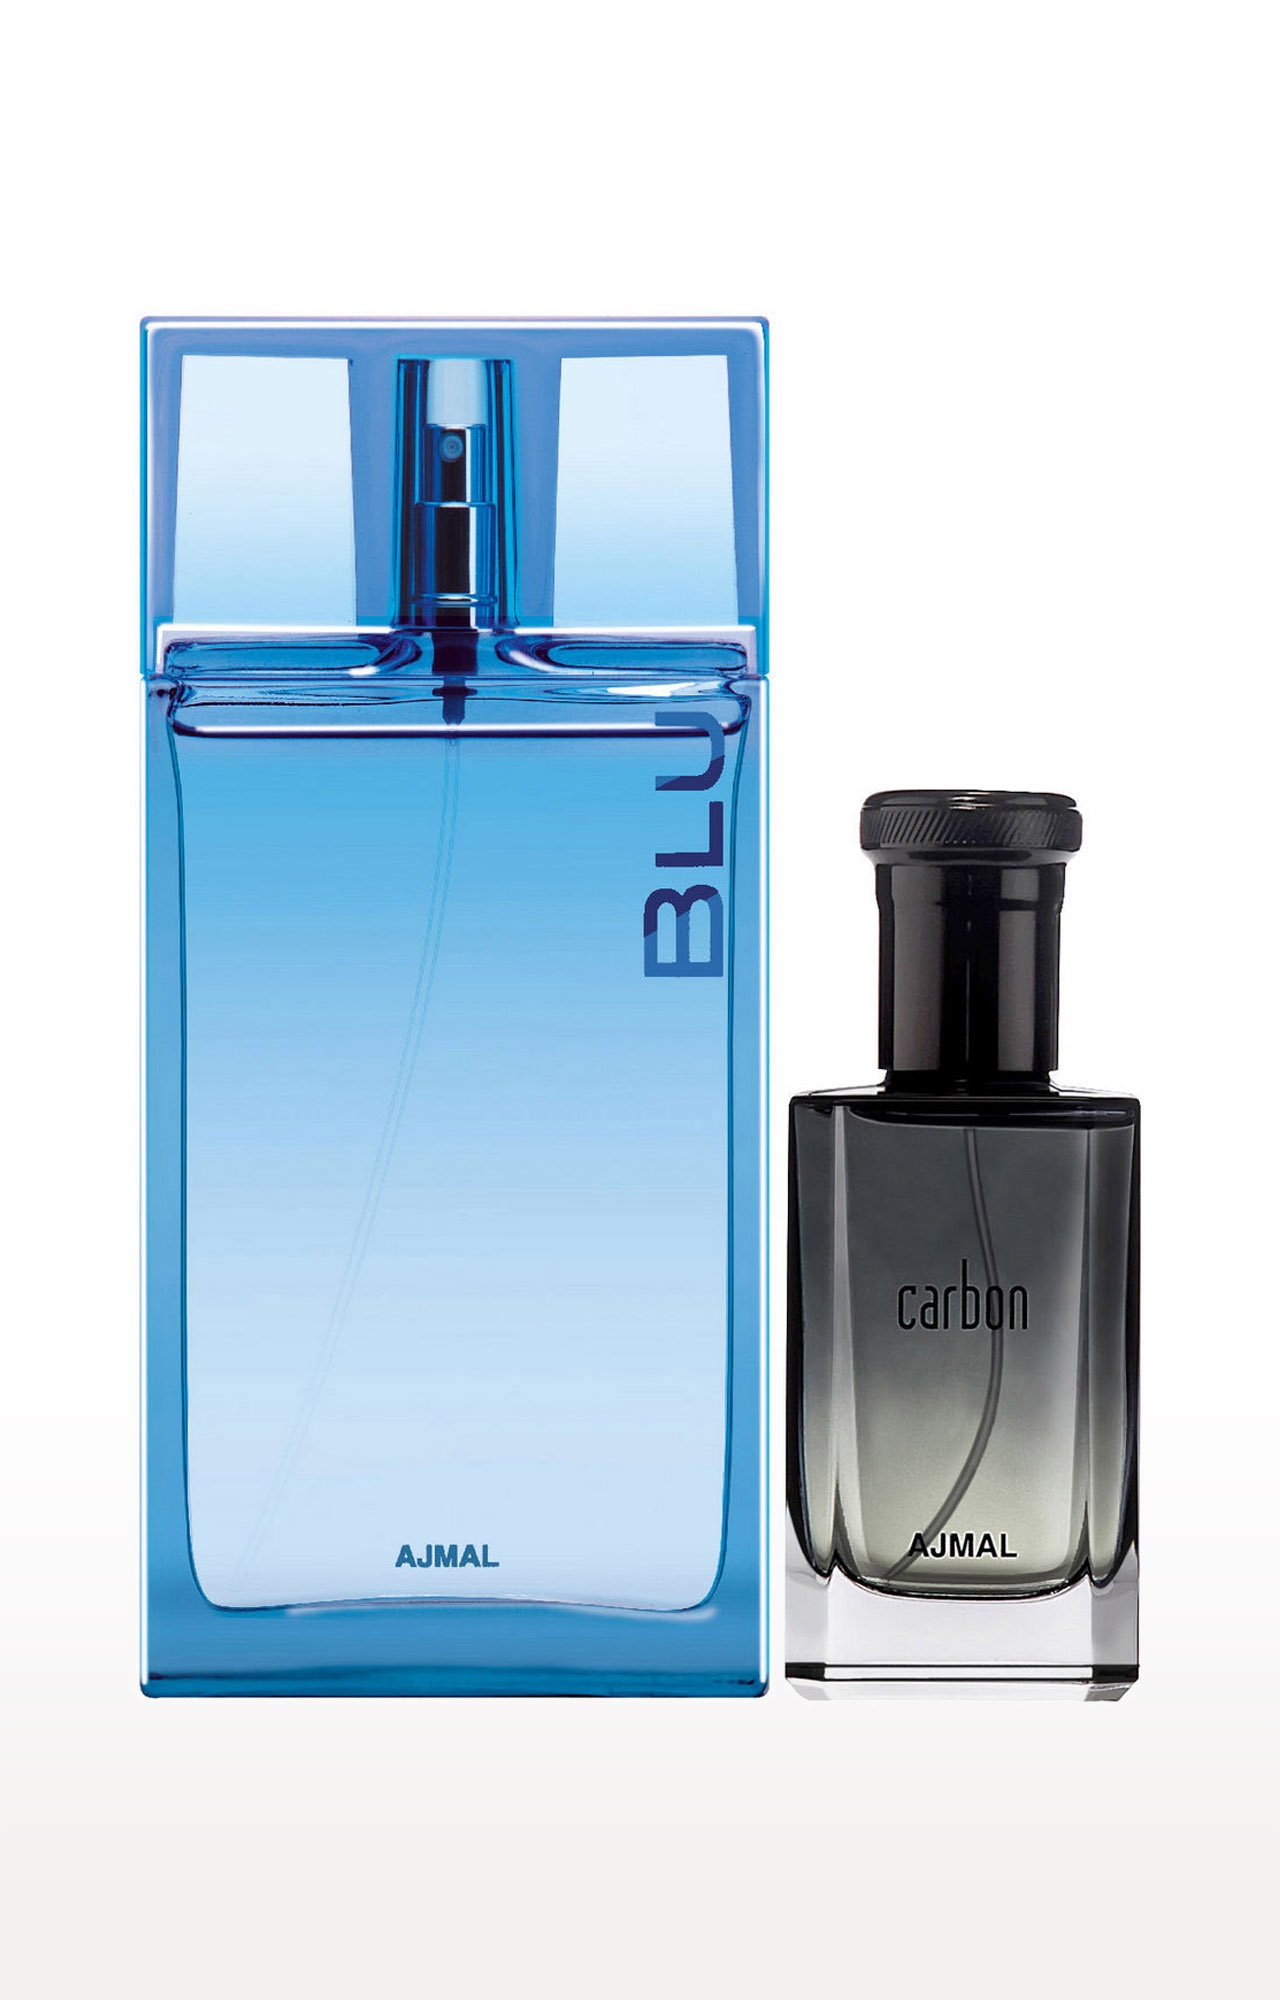 Ajmal | Ajmal Blu EDP Aquatic Woody Perfume 90ml for Men and Carbon EDP Citrus Spicy Perfume 100ml for Men + 2 Parfum Testers FREE